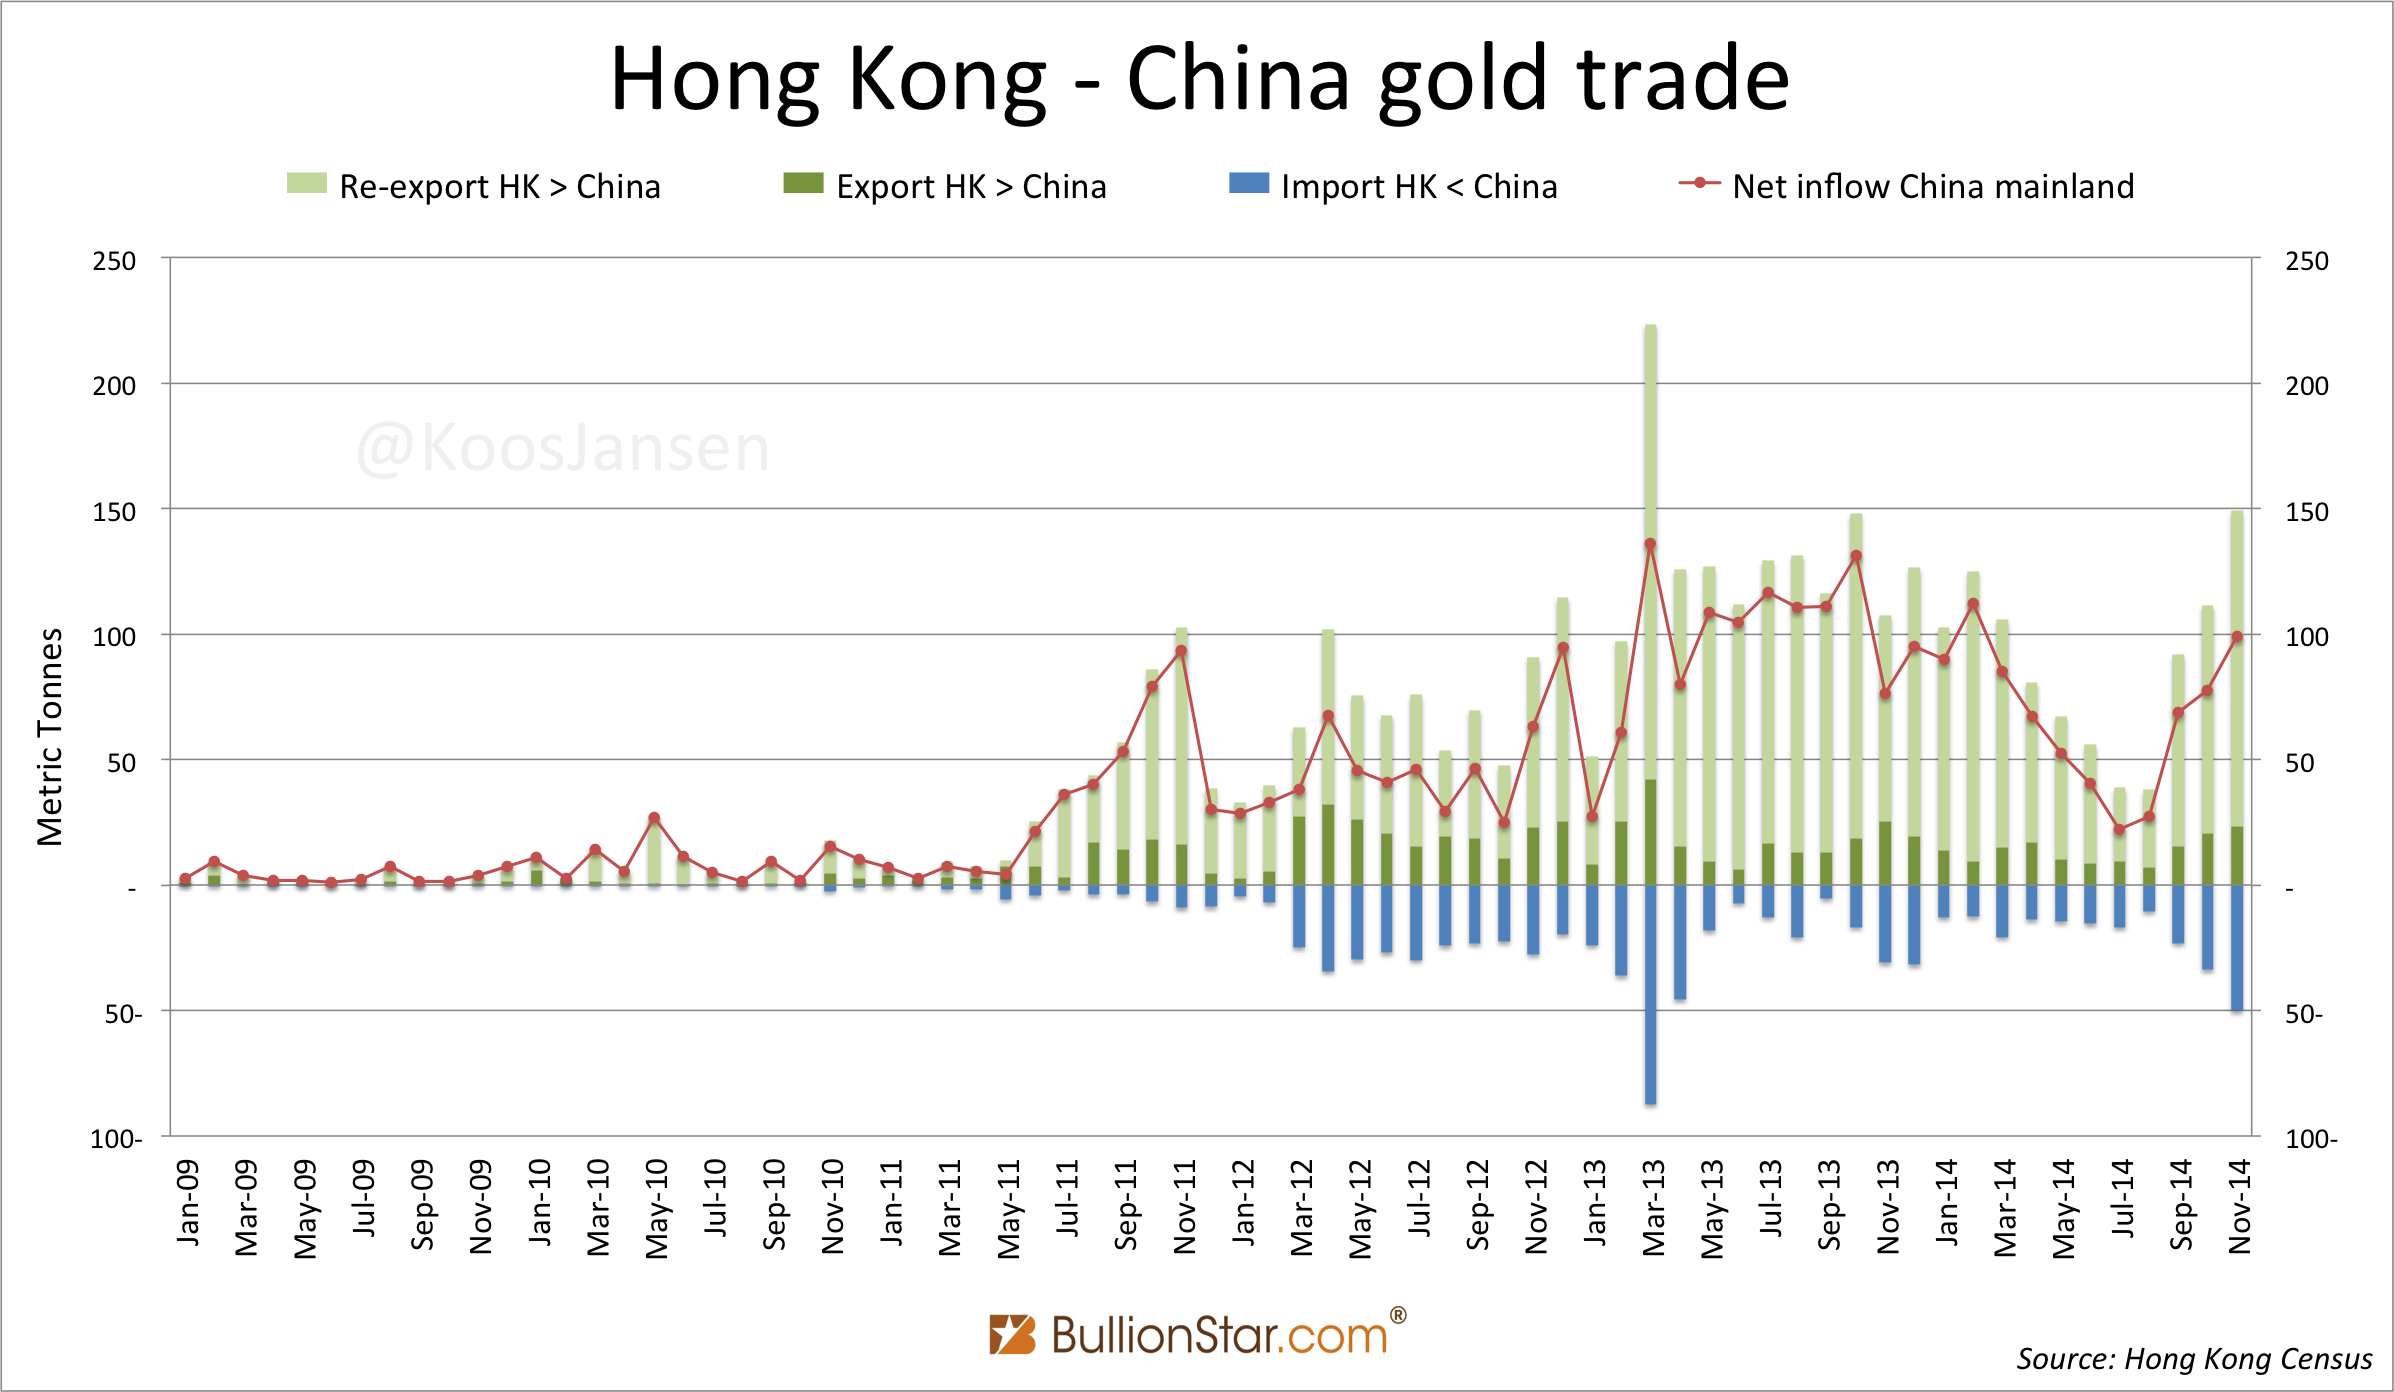 Hong Kong - China gold trade monthly January 2009 - November 2014